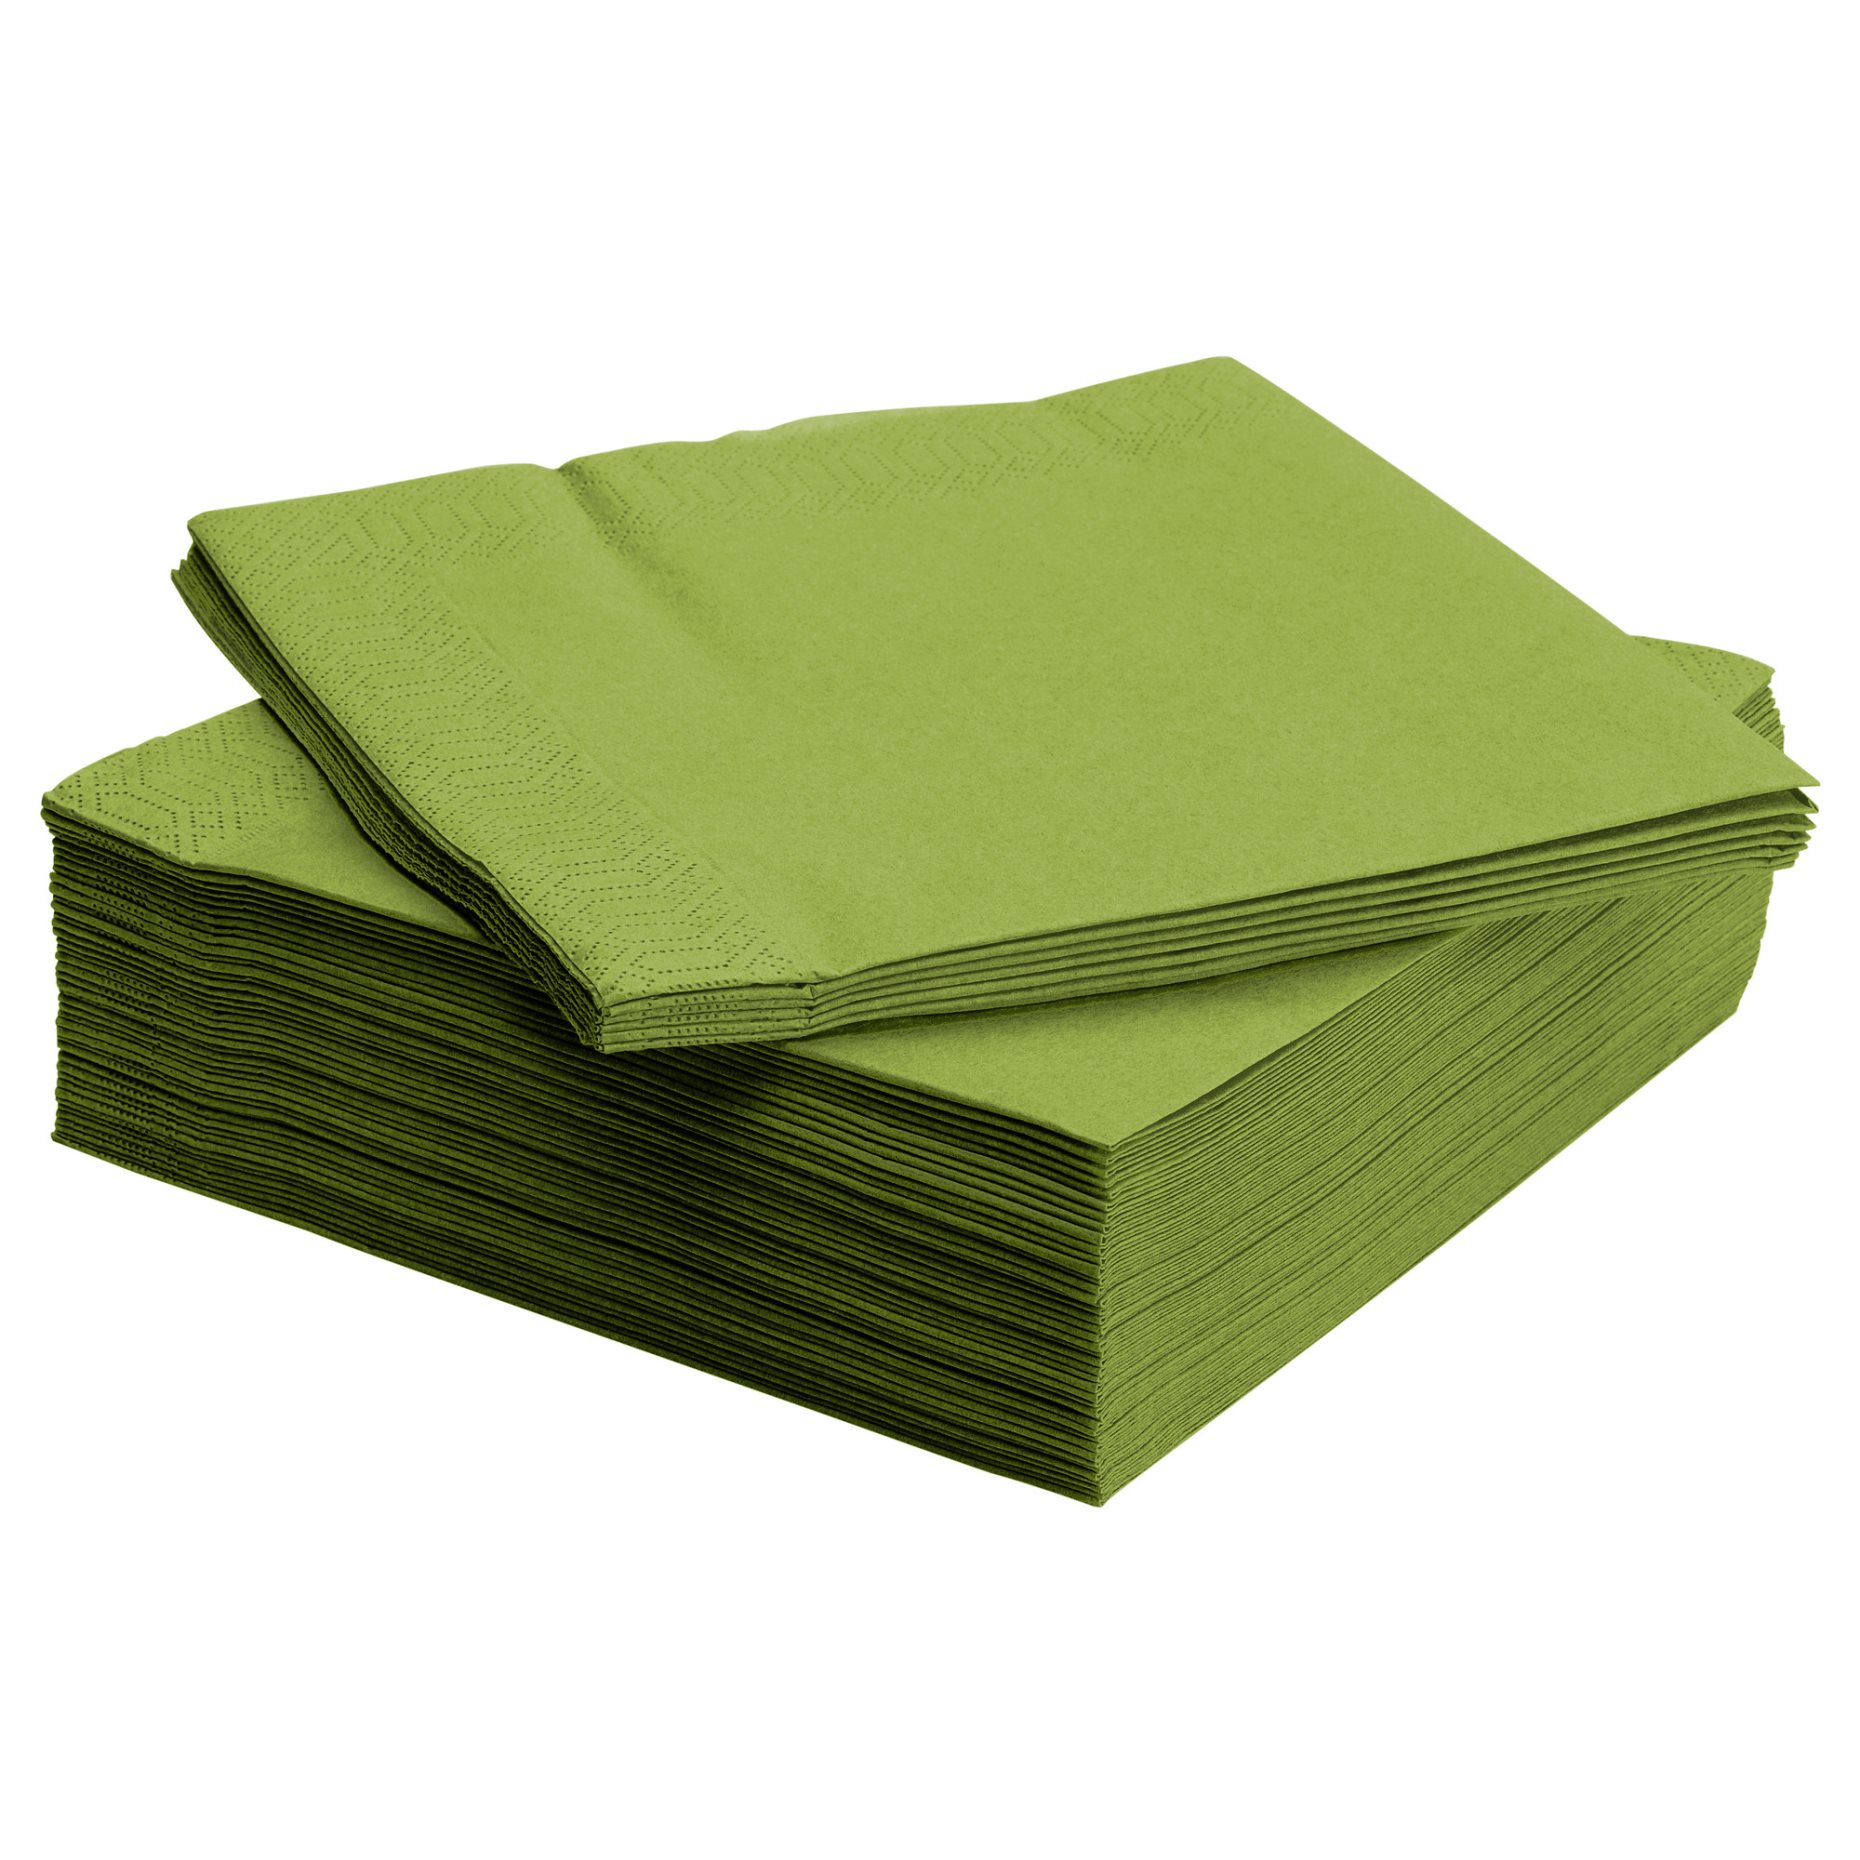 FANTASTISK, paper napkin, 50 pack, 370g, 001.498.31